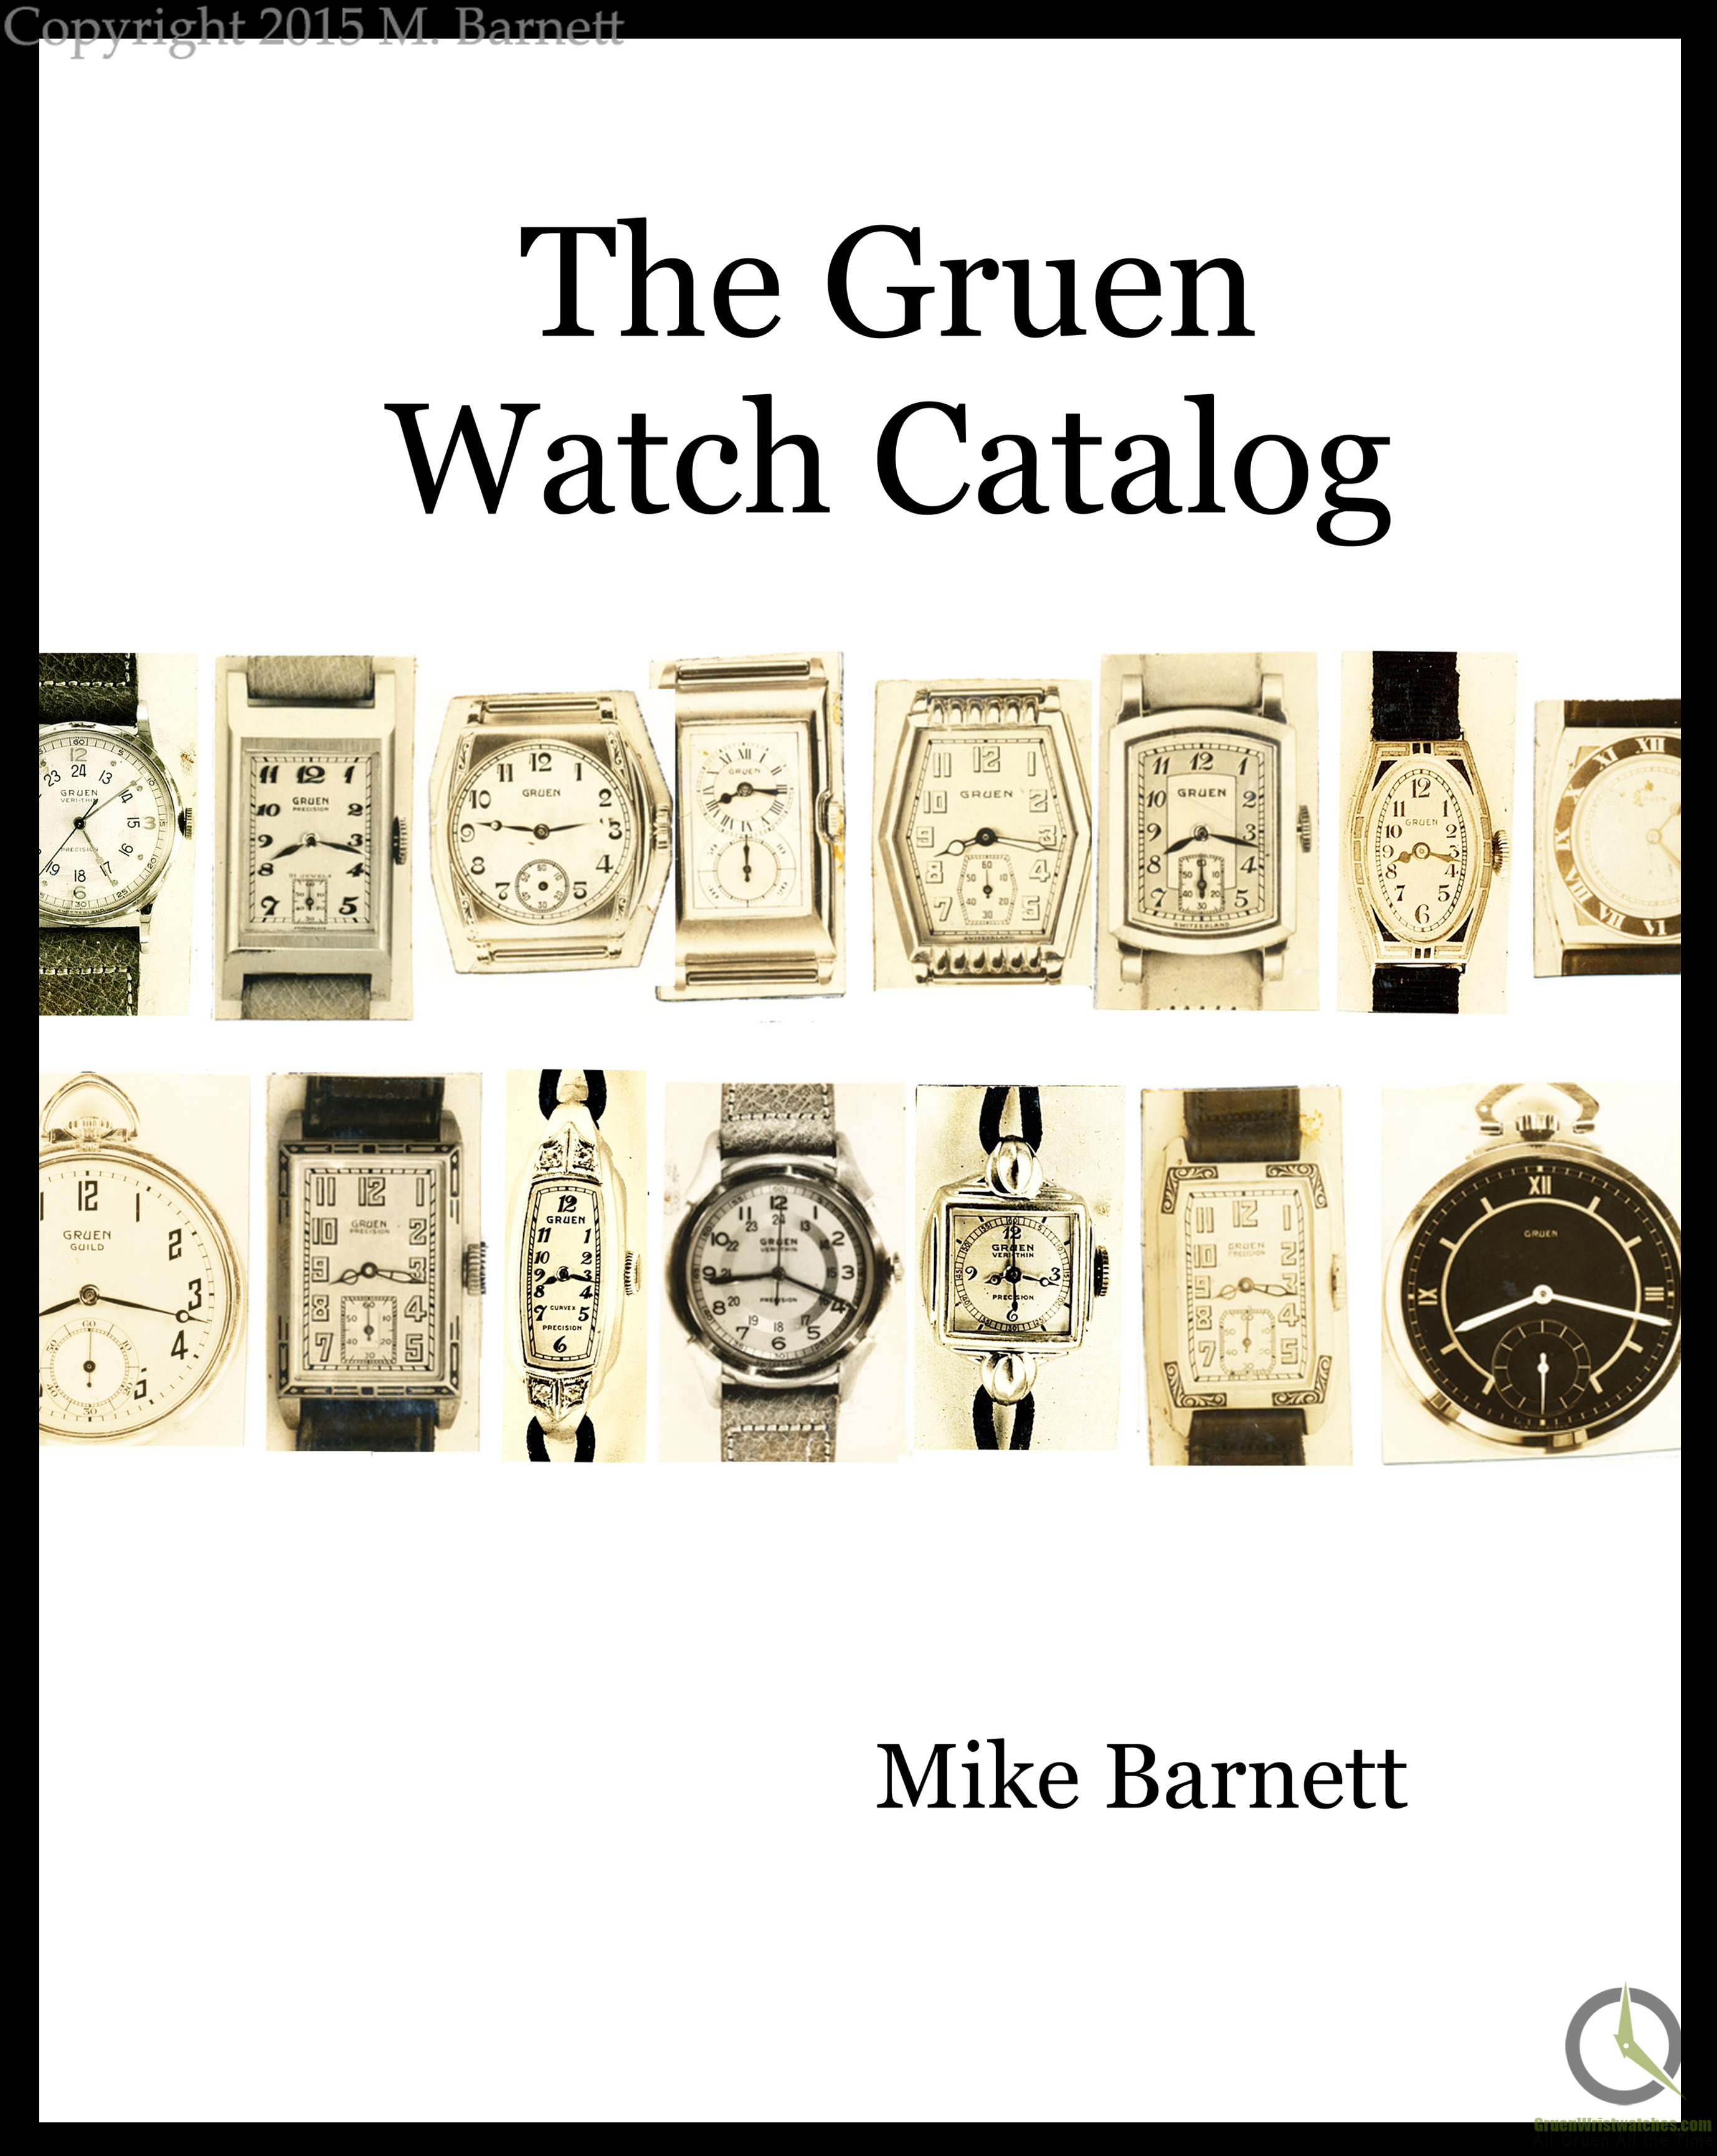 The Gruen Watch Catalog